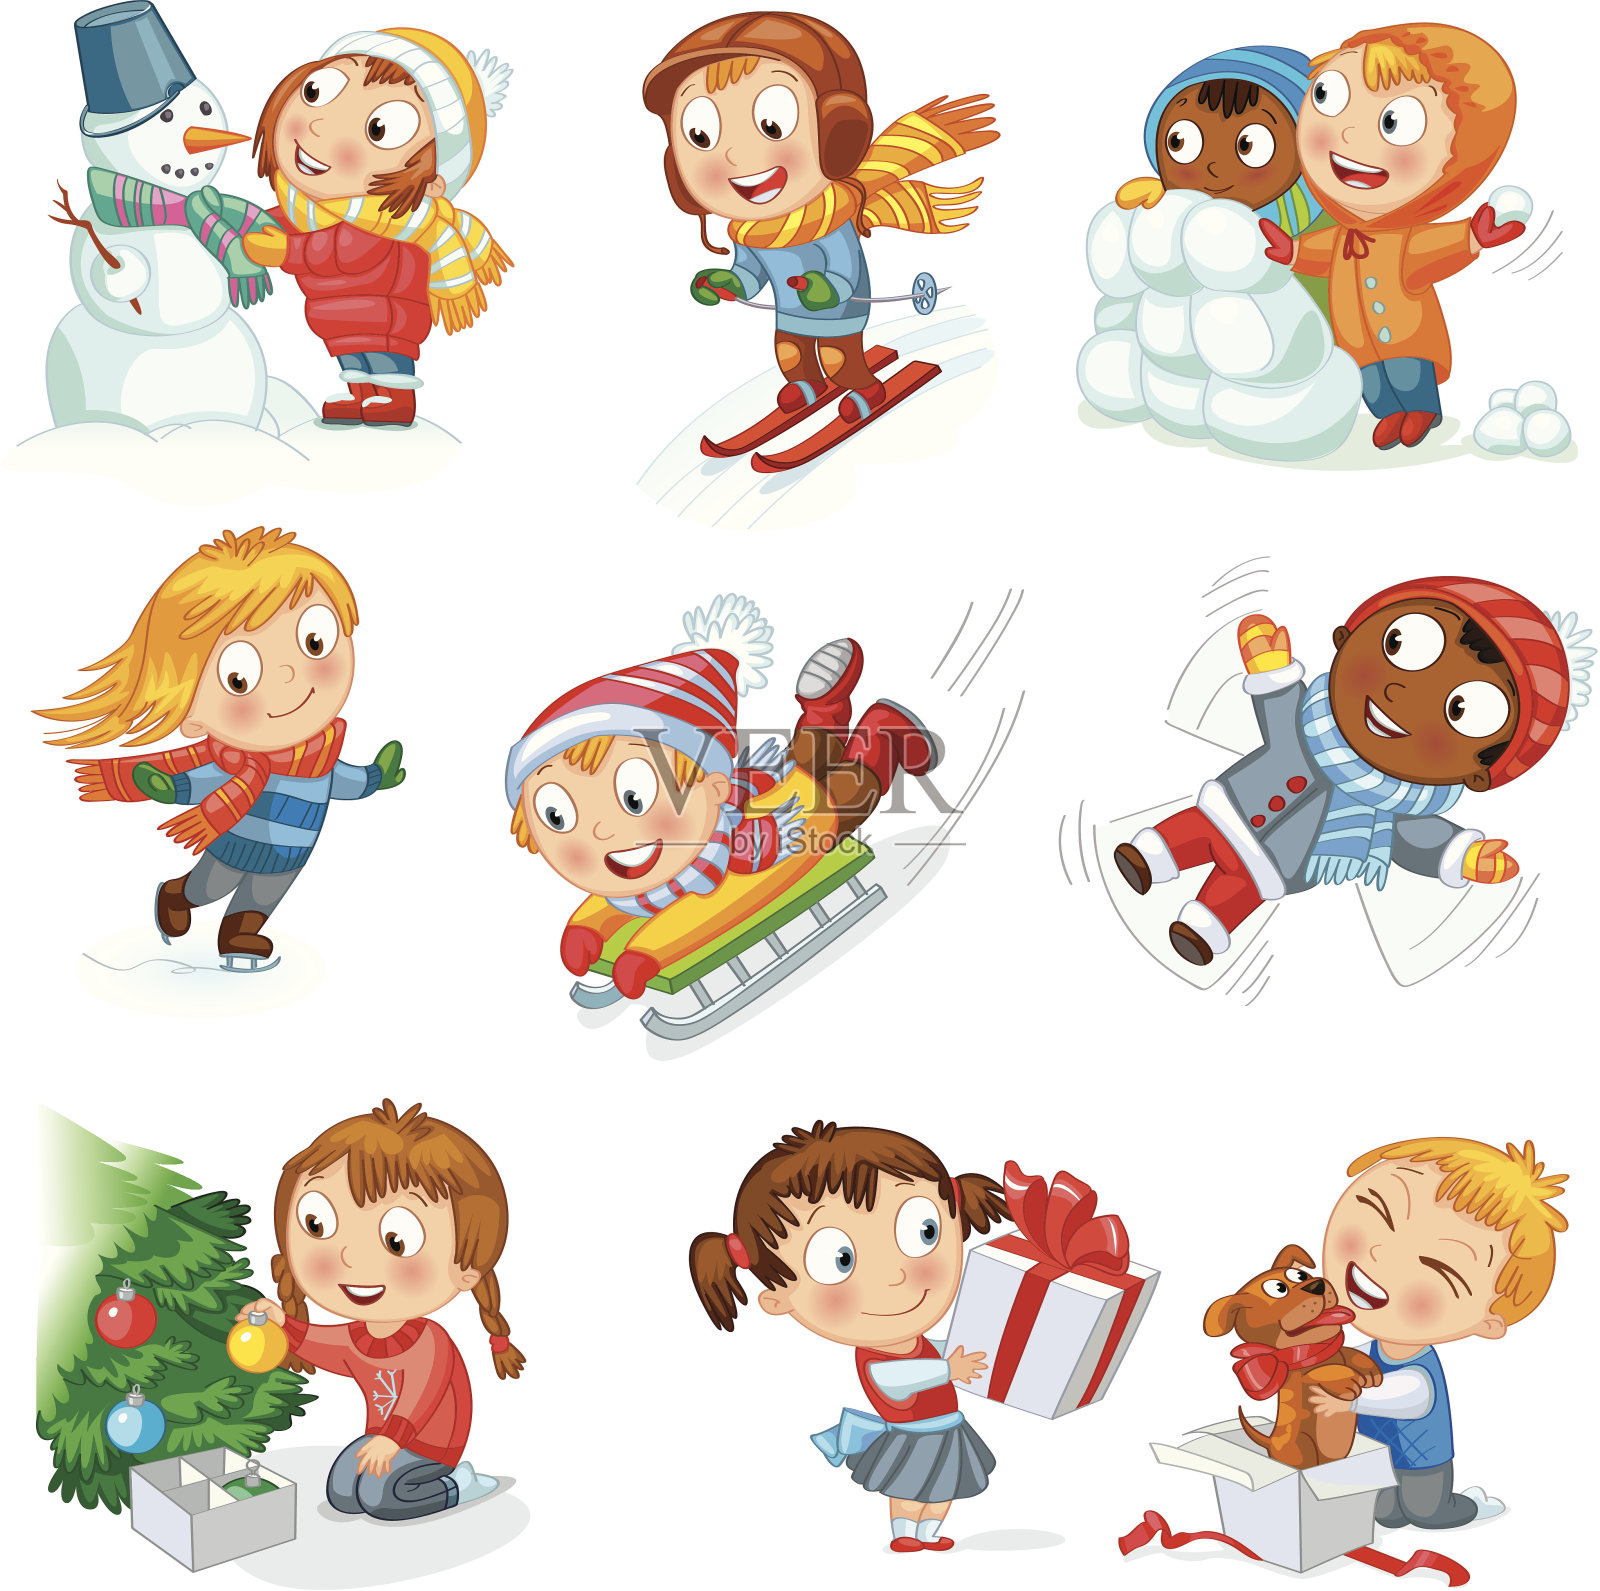 卡通人物的孩子在圣诞节期间的乐趣插画图片素材